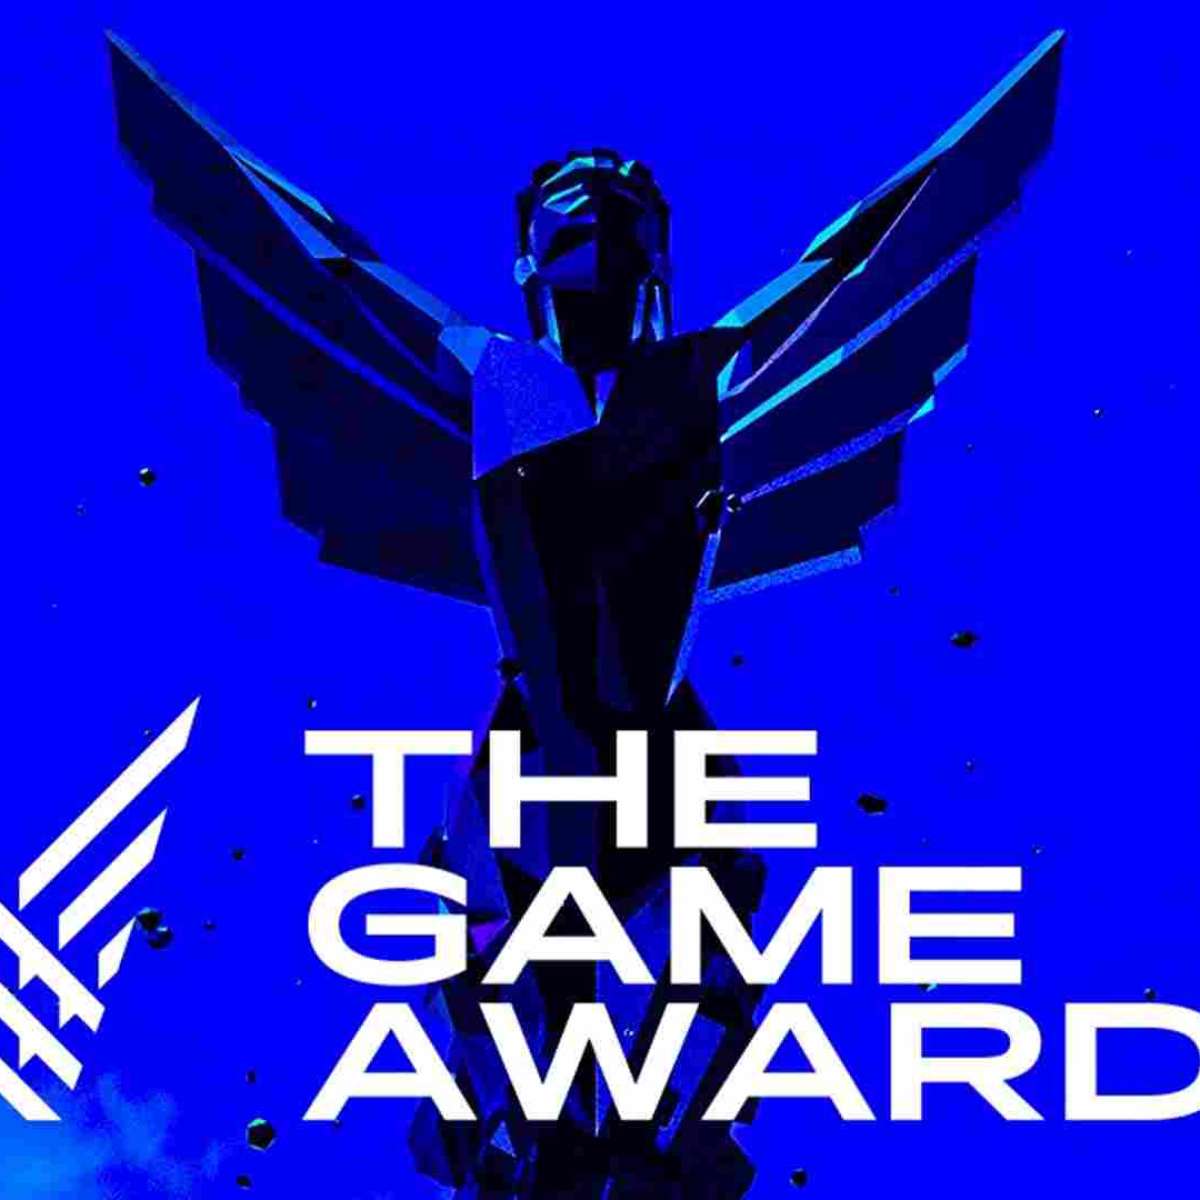 Game Awards 2019 premia melhores jogos do ano; veja indicados